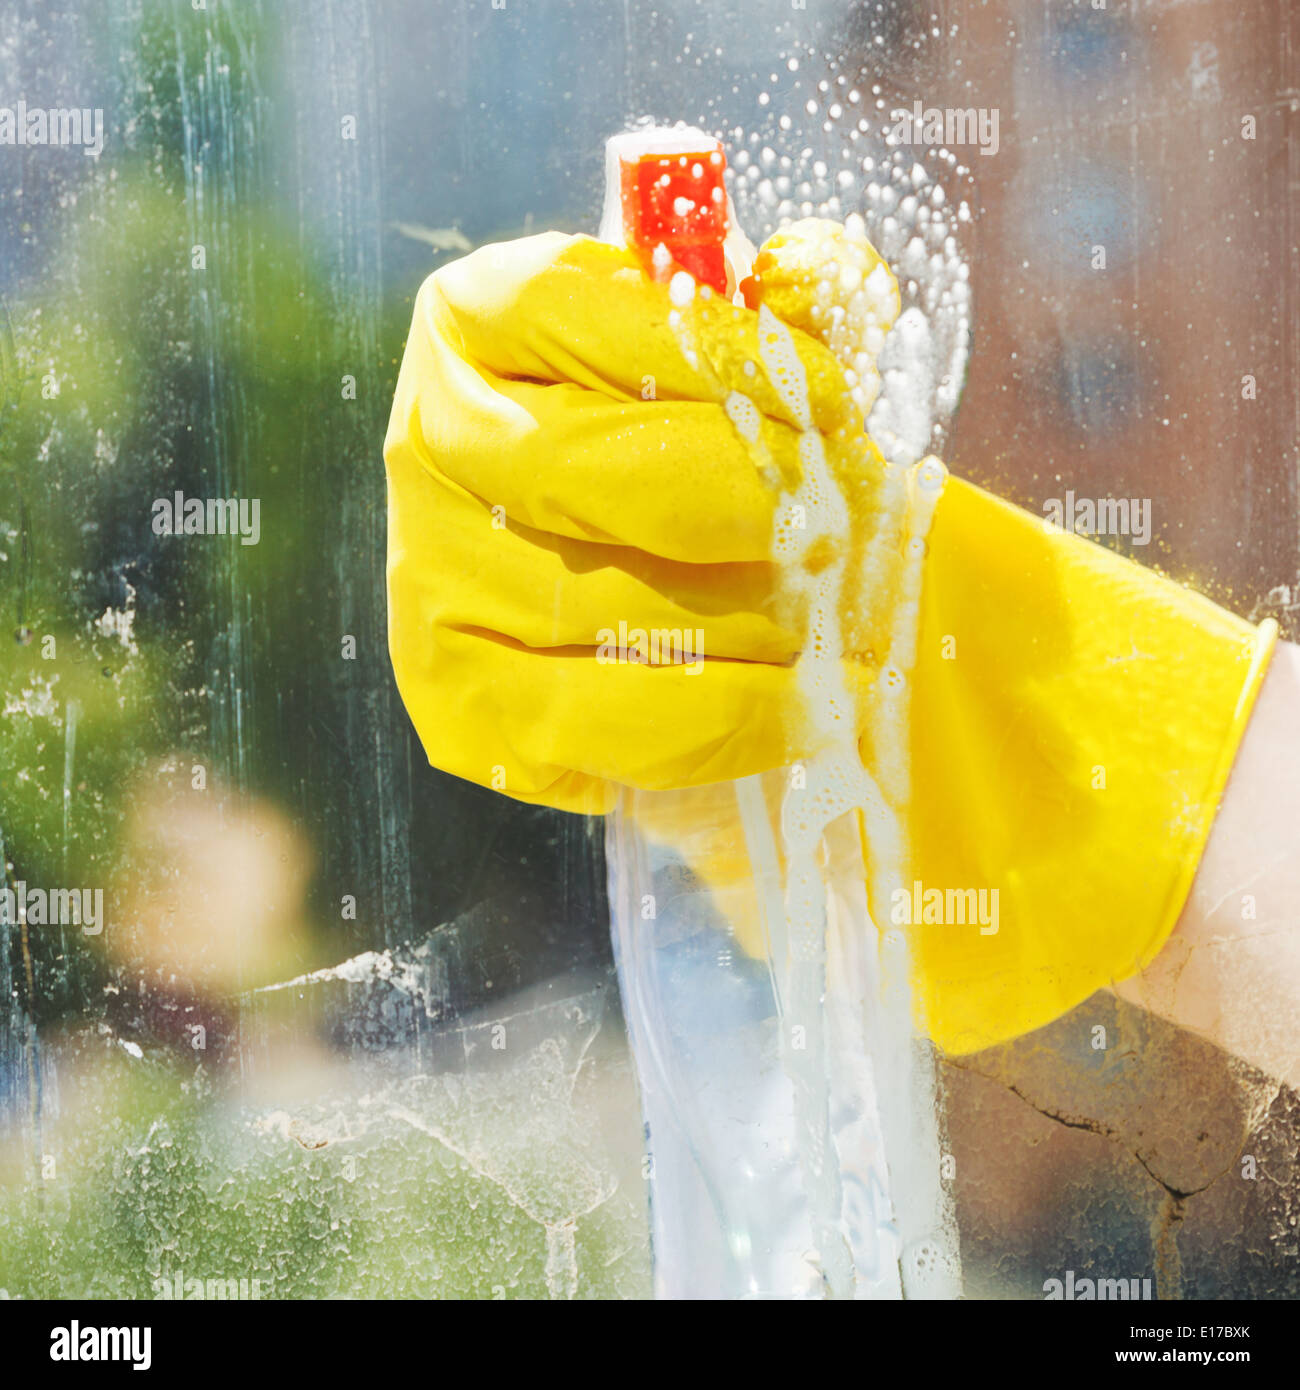 Waschen Sie Fenster aus Glas Reiniger Sprühflasche Stockfoto